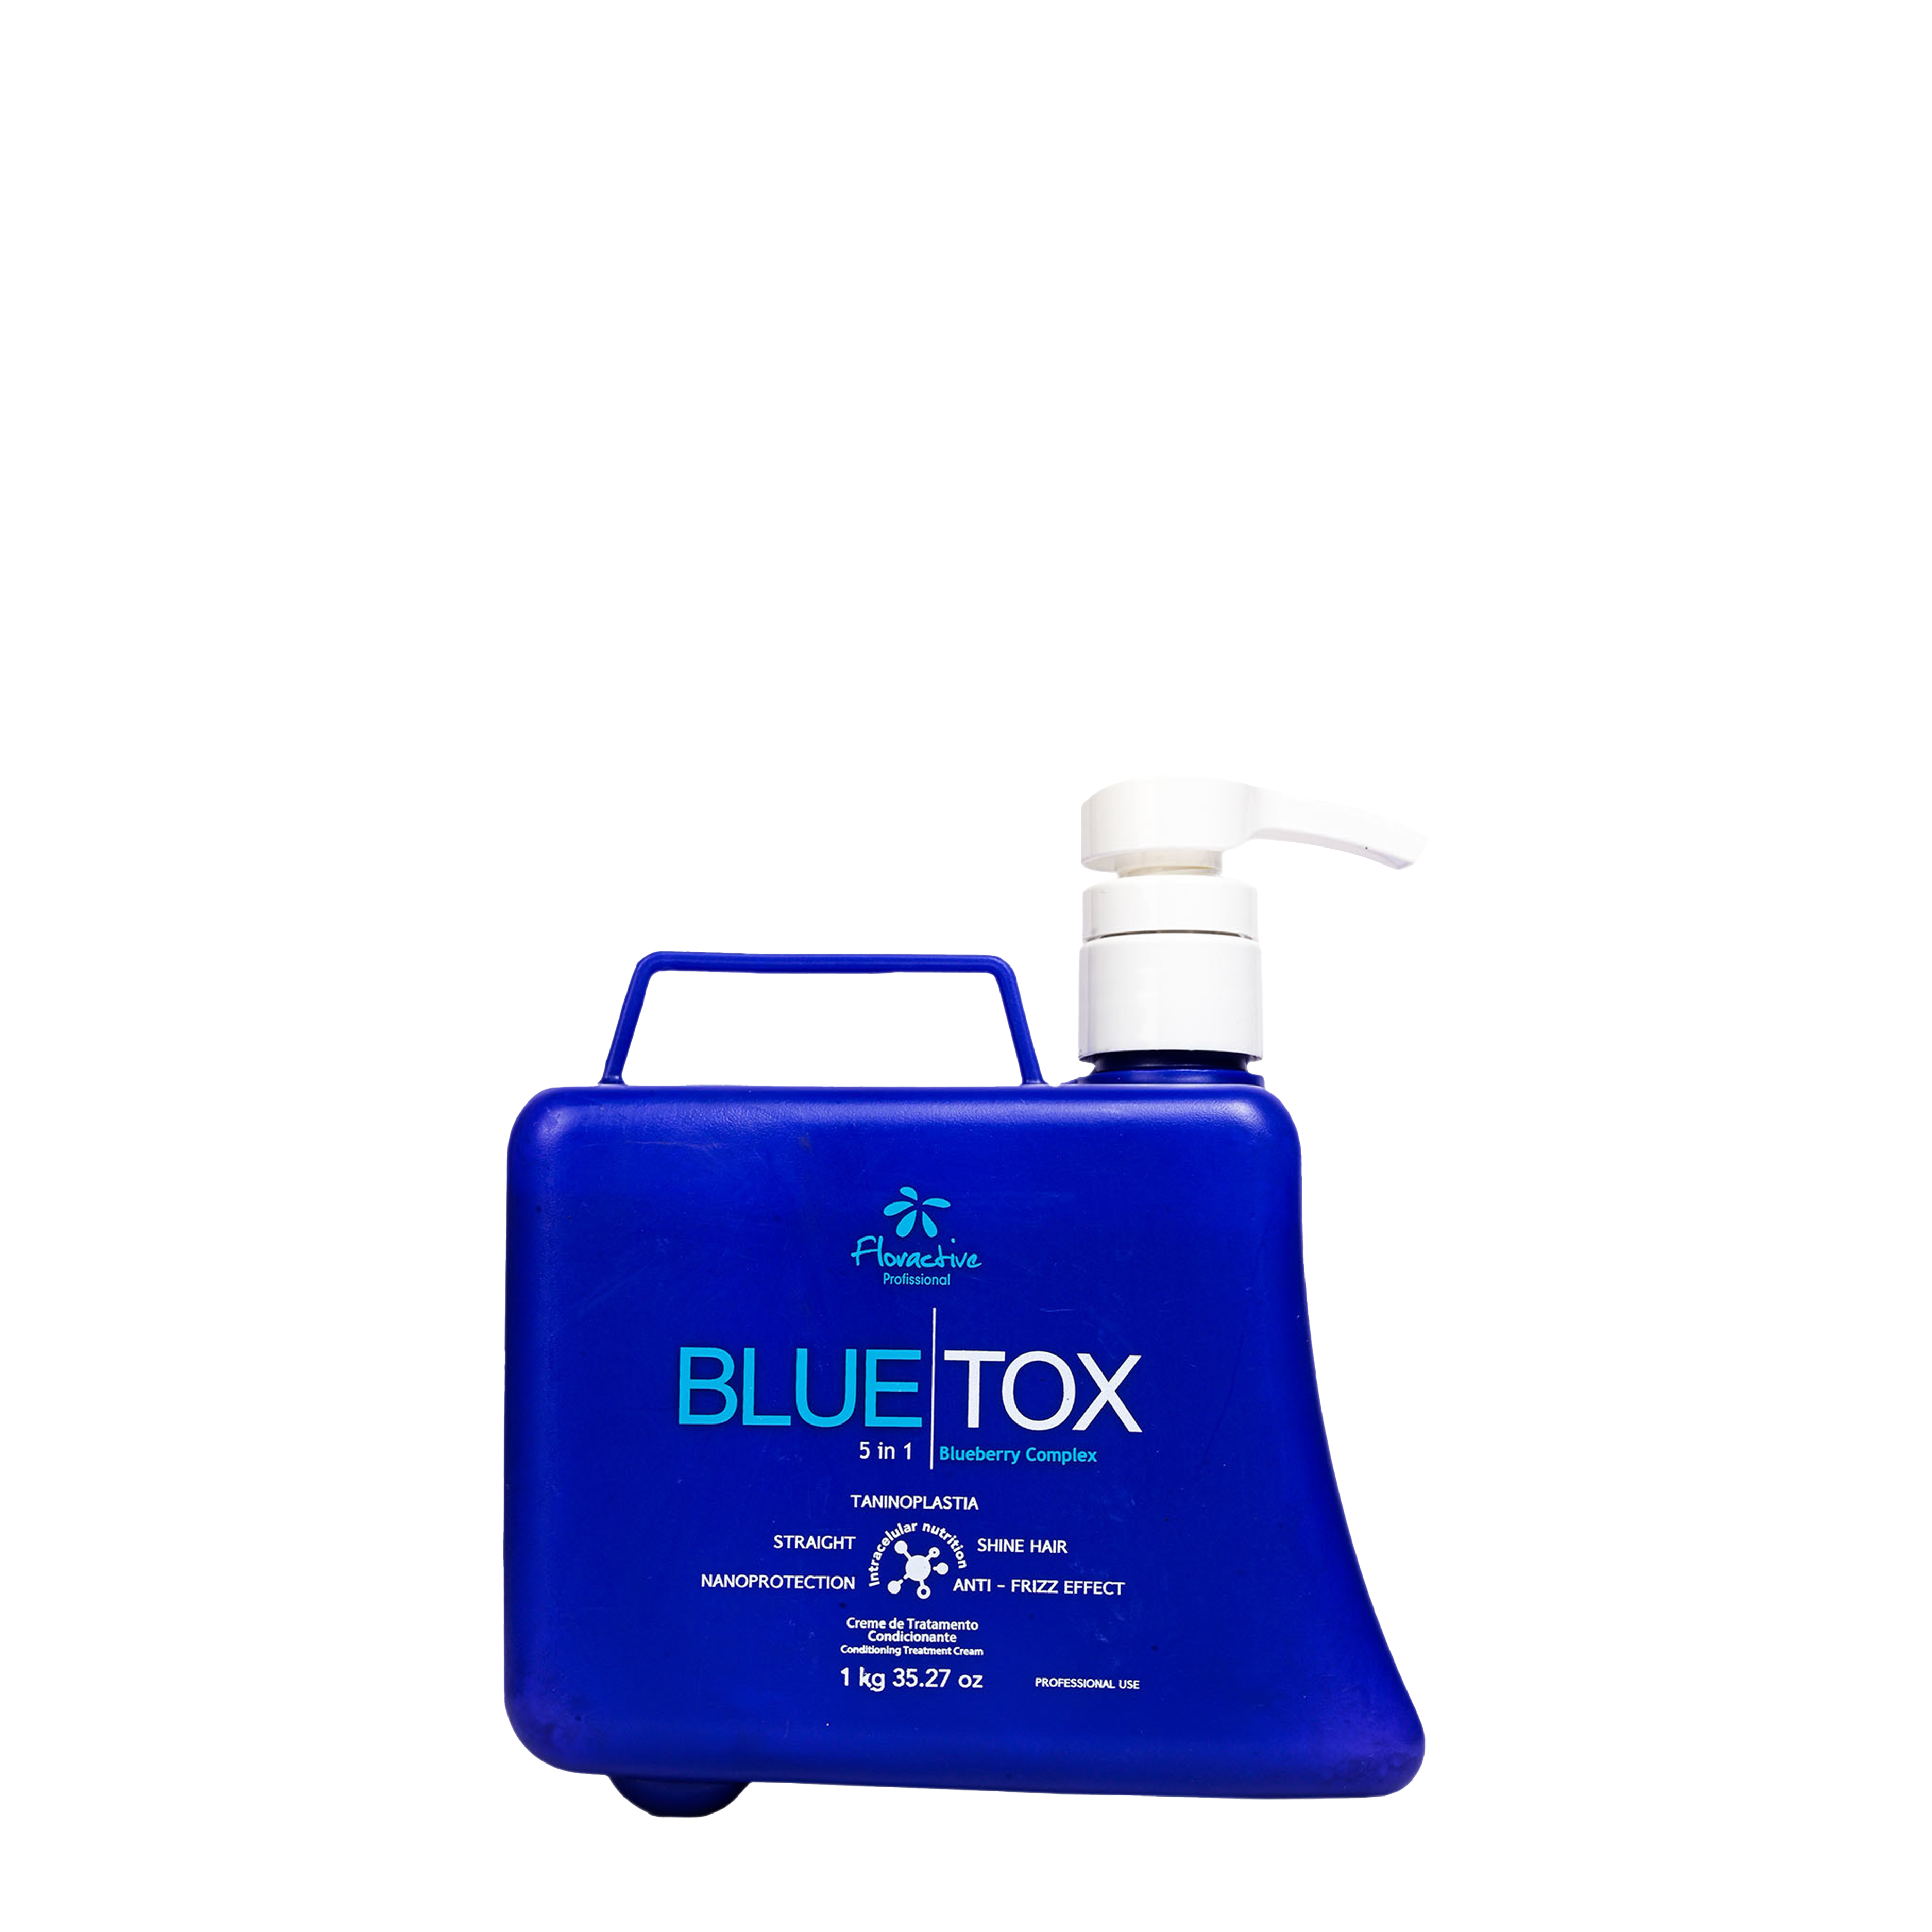 Bluetox